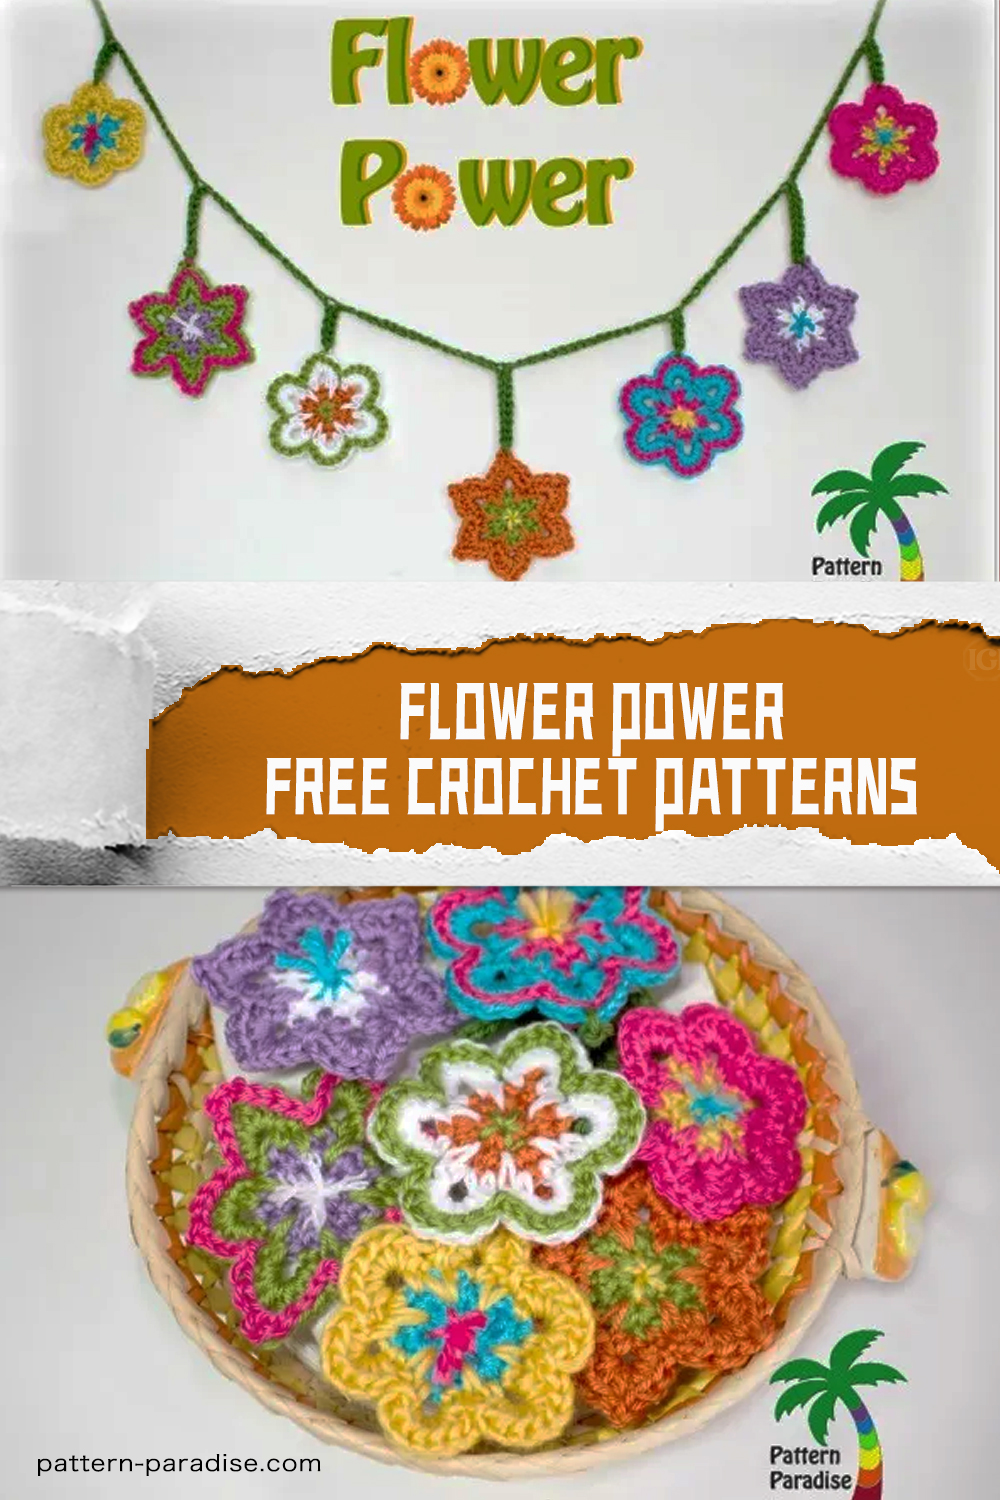 FREE Flower Power Crochet Patterns